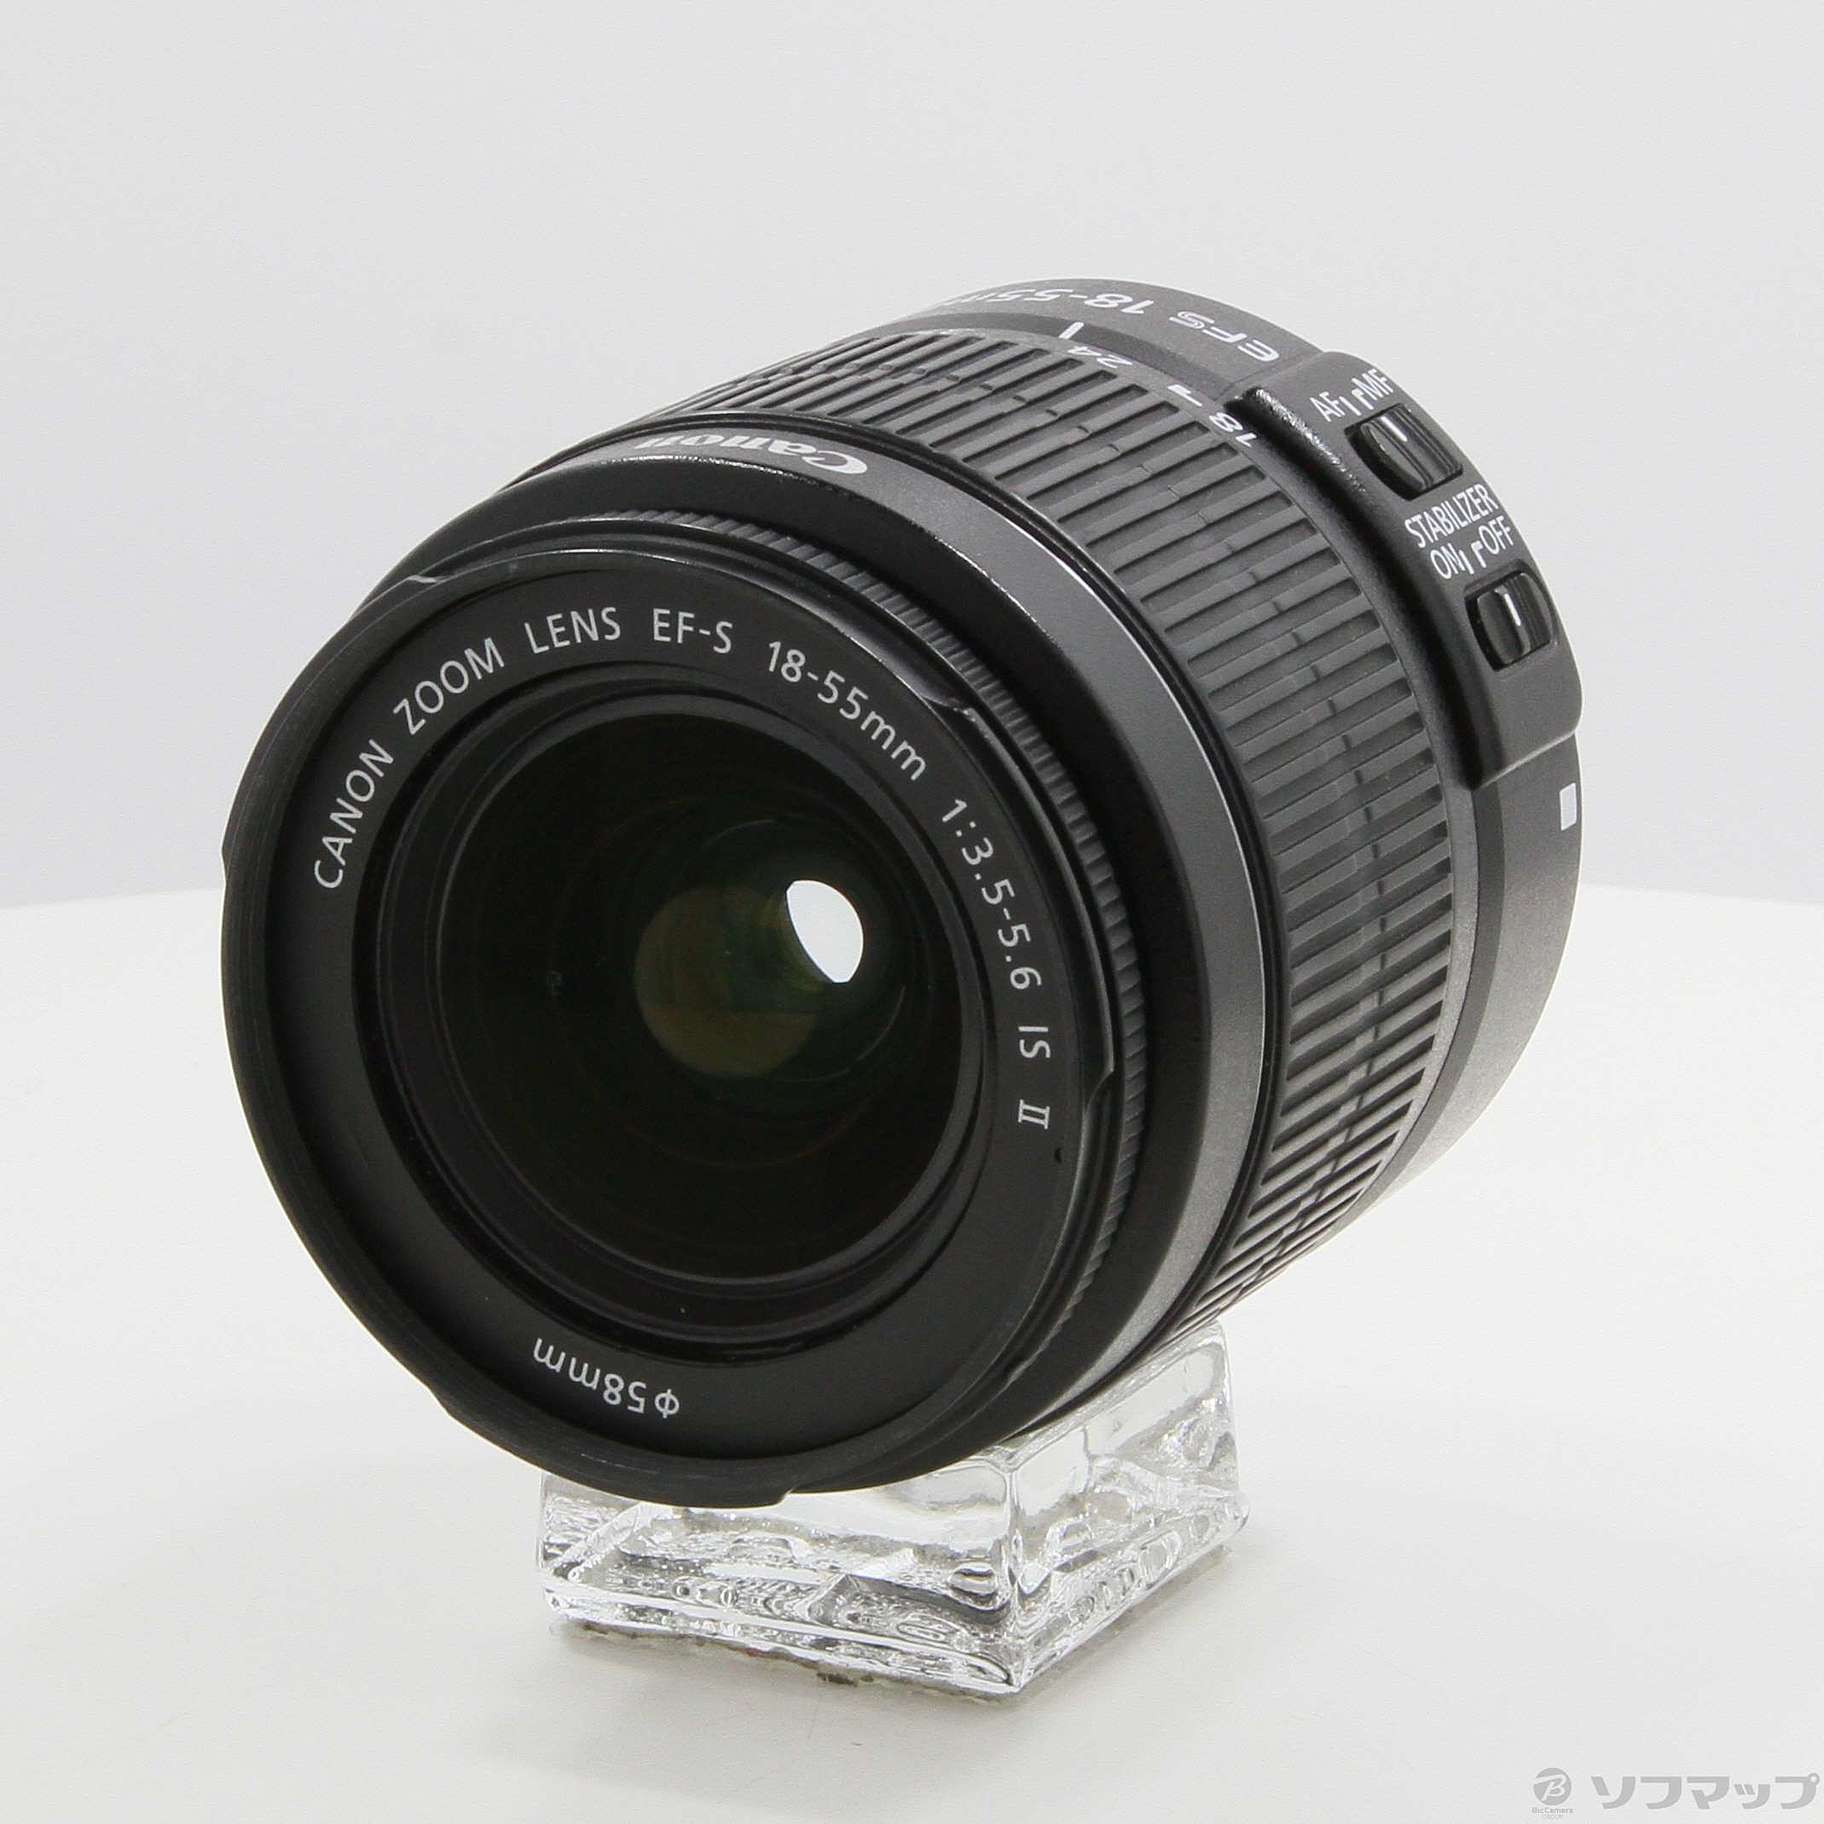 Canon EF-S 18-55mm F3.5-5.6 IS II